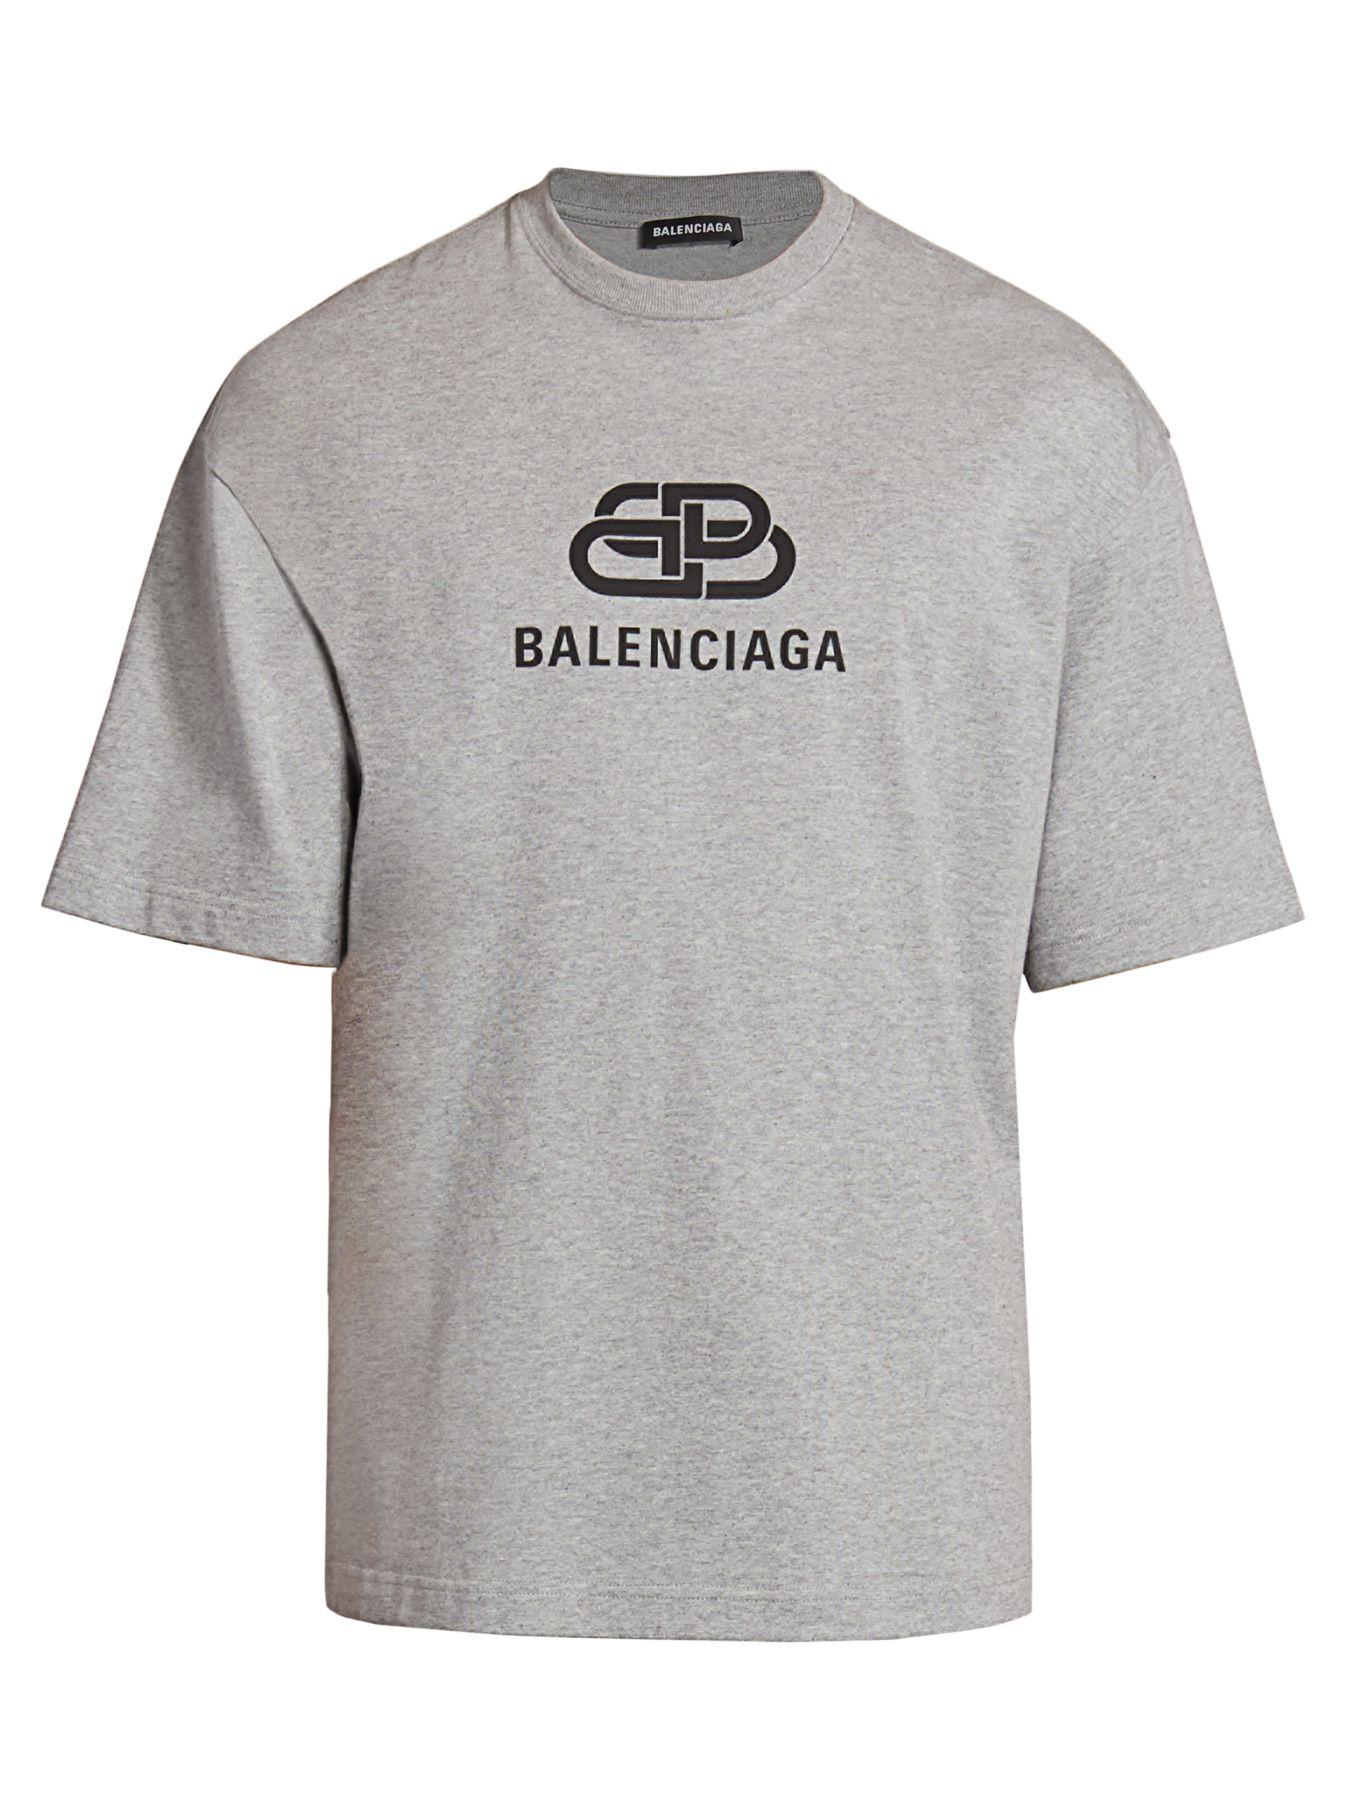 Balenciaga Cotton Logo T-shirt Grey in Gray for Men - Save 50% - Lyst